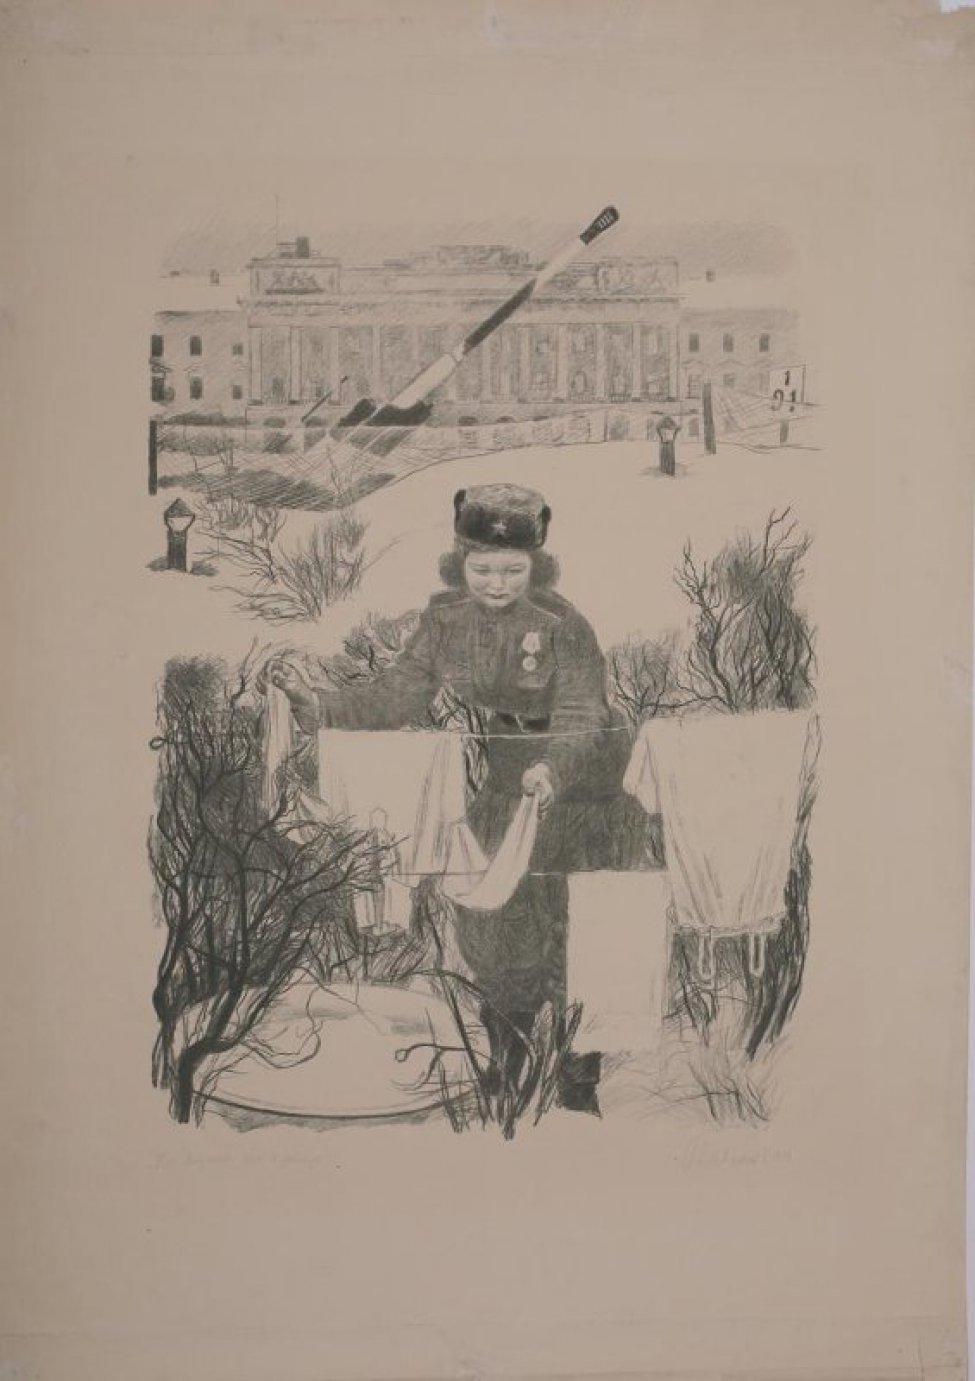 Изображена девушка в военной форме, развешивающая на веревке белье. В конце площади у домов - зенитки.